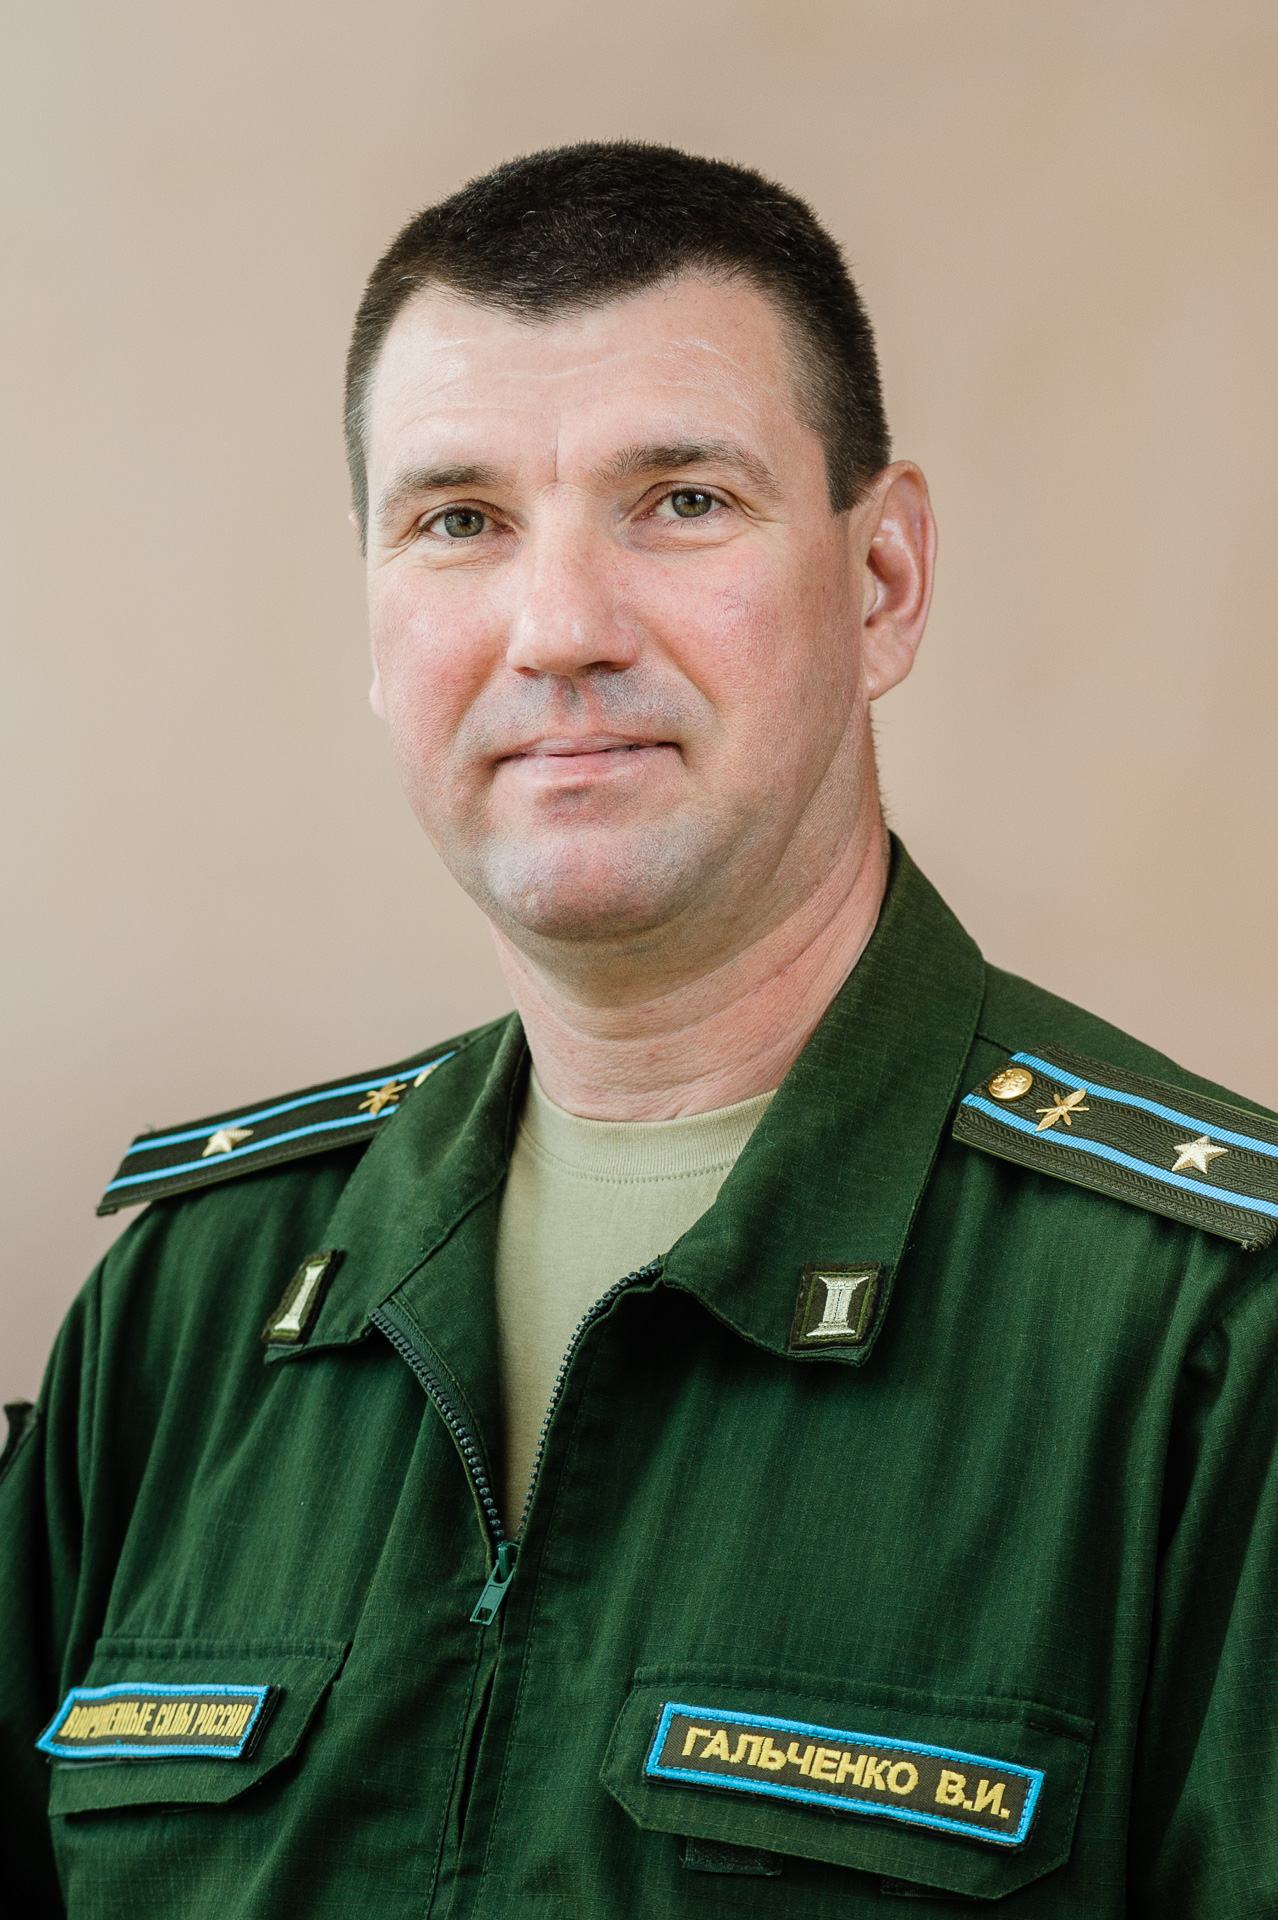 Гальченко Василий Иванович.